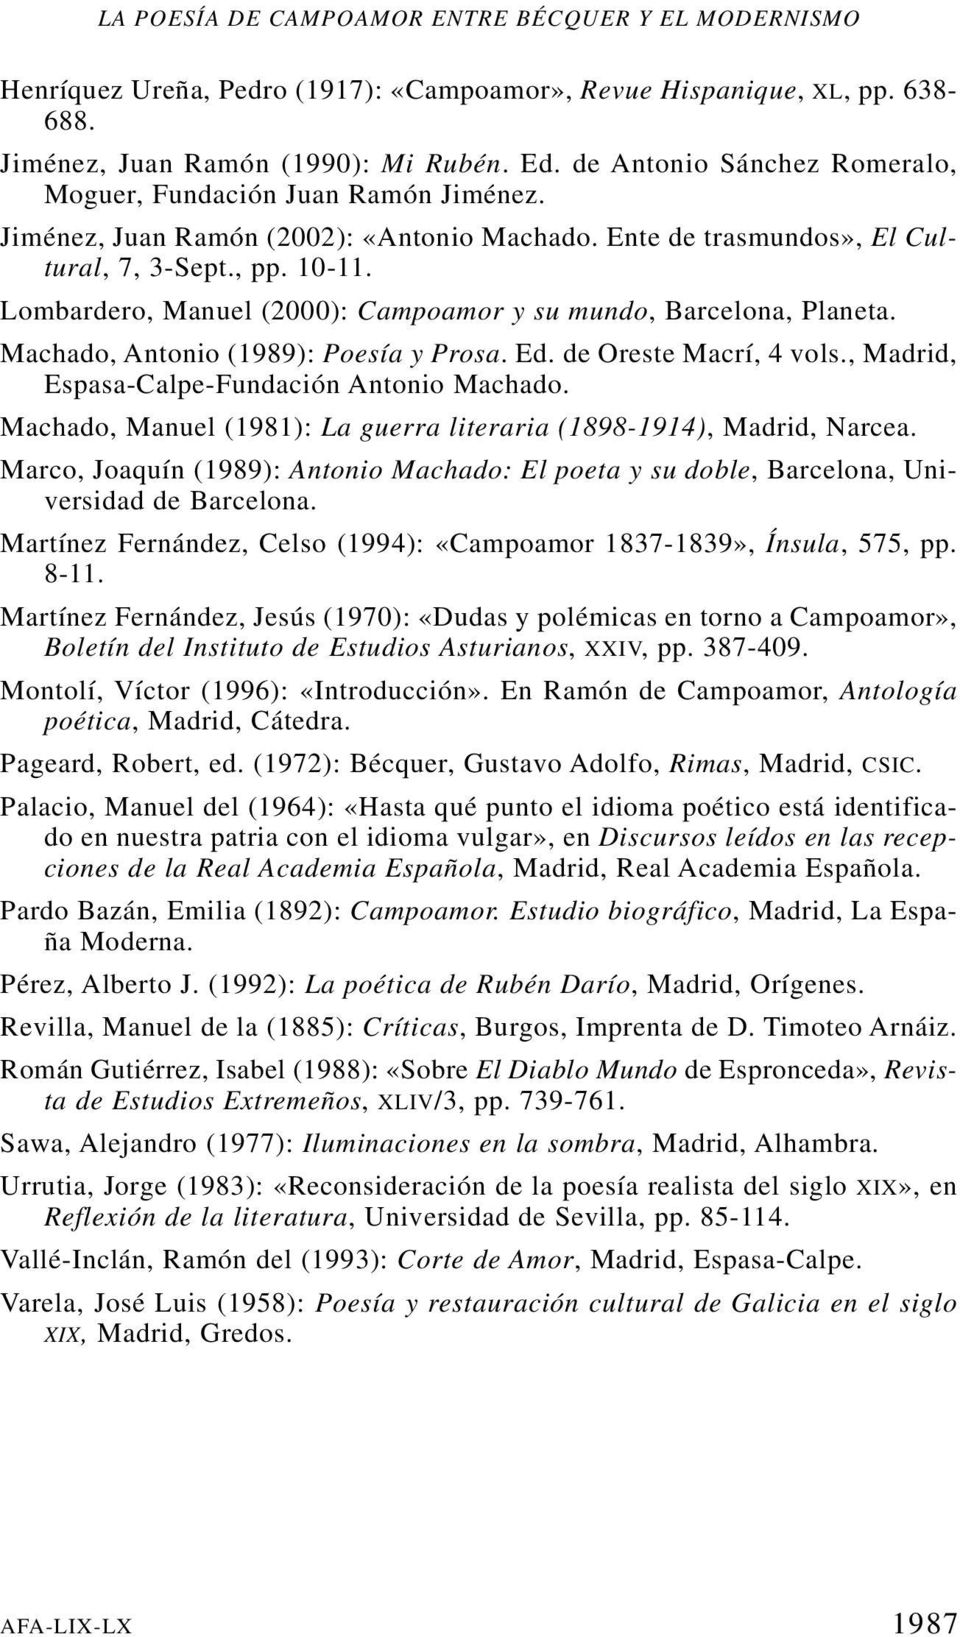 Lombardero, Manuel (2000): Campoamor y su mundo, Barcelona, Planeta. Machado, Antonio (1989): Poesía y Prosa. Ed. de Oreste Macrí, 4 vols., Madrid, Espasa-Calpe-Fundación Antonio Machado.